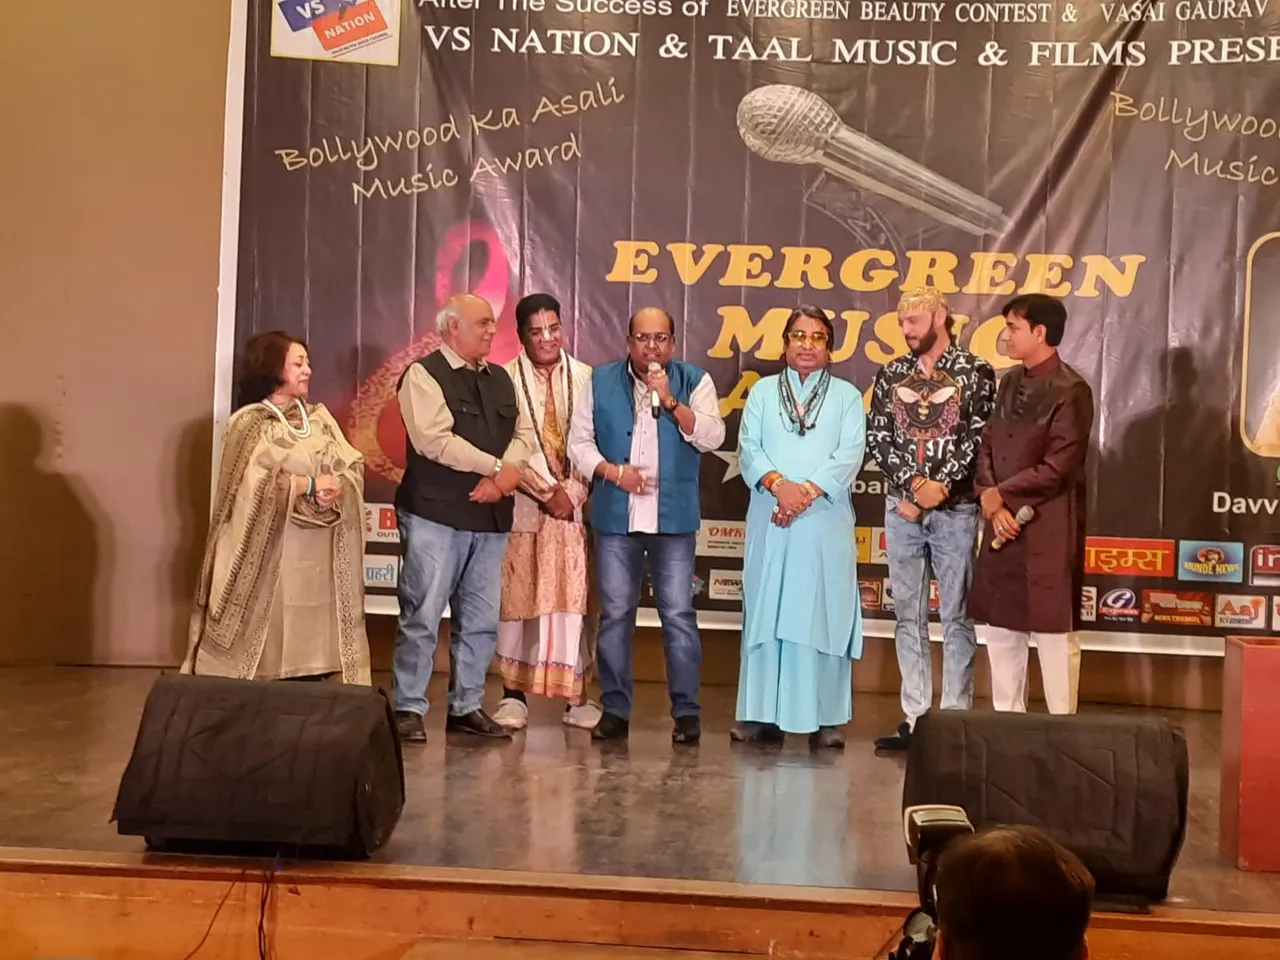 देवेंद्र खन्ना ने सजाई एवरग्रीन म्यूजिक अवॉर्ड की खूबसूरत सुरीली शाम, संगीत सितारे आए एक साथ नज़र